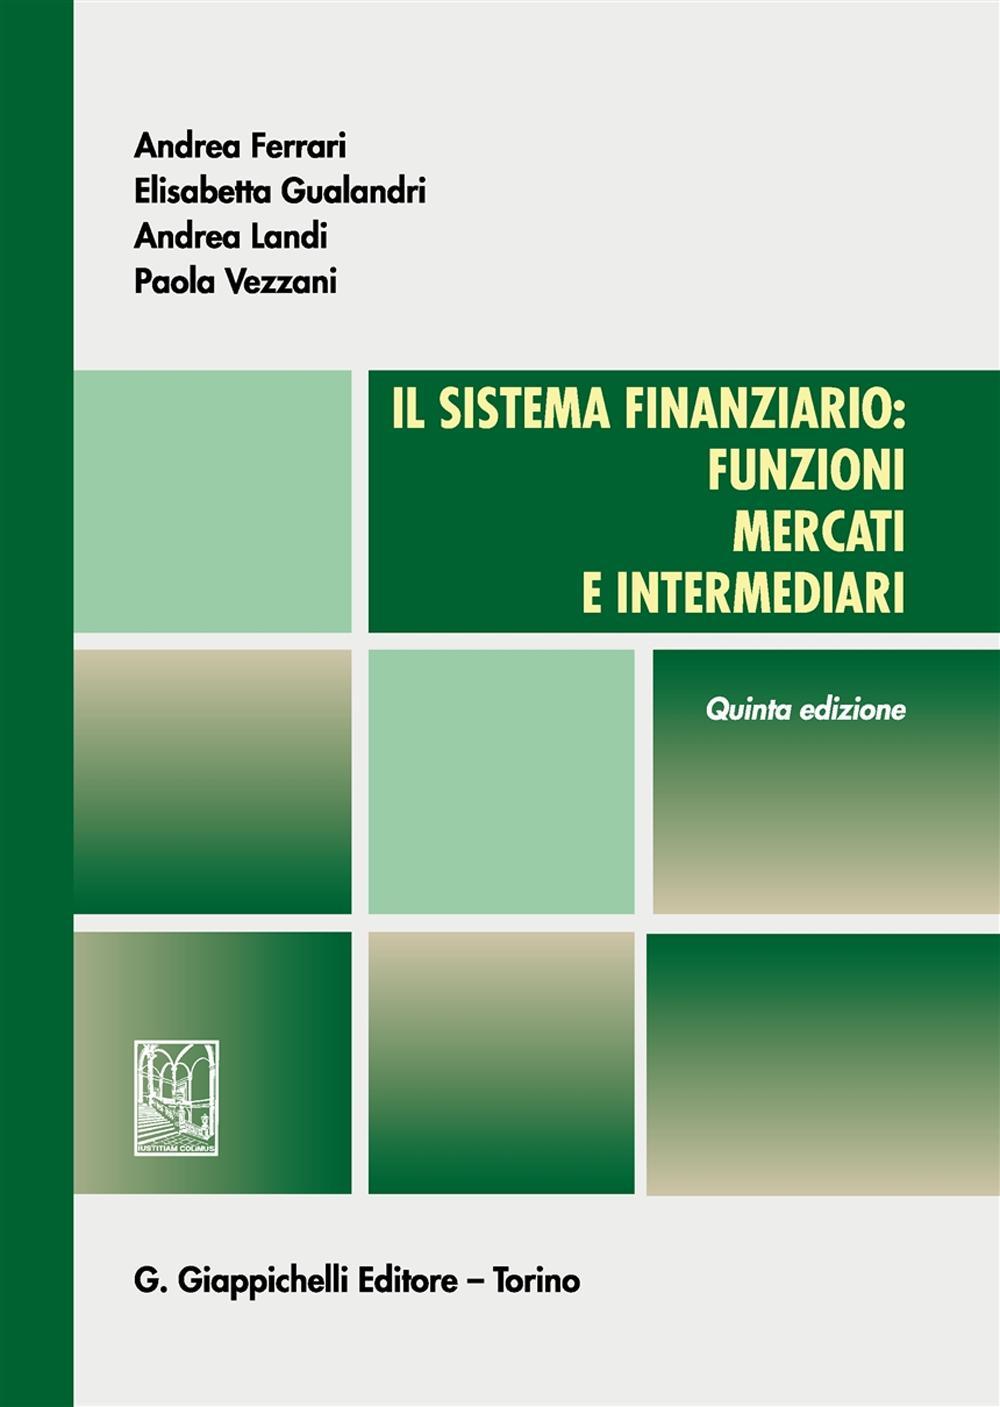 Il sistema finanziario: funzioni, mercati e intermediari